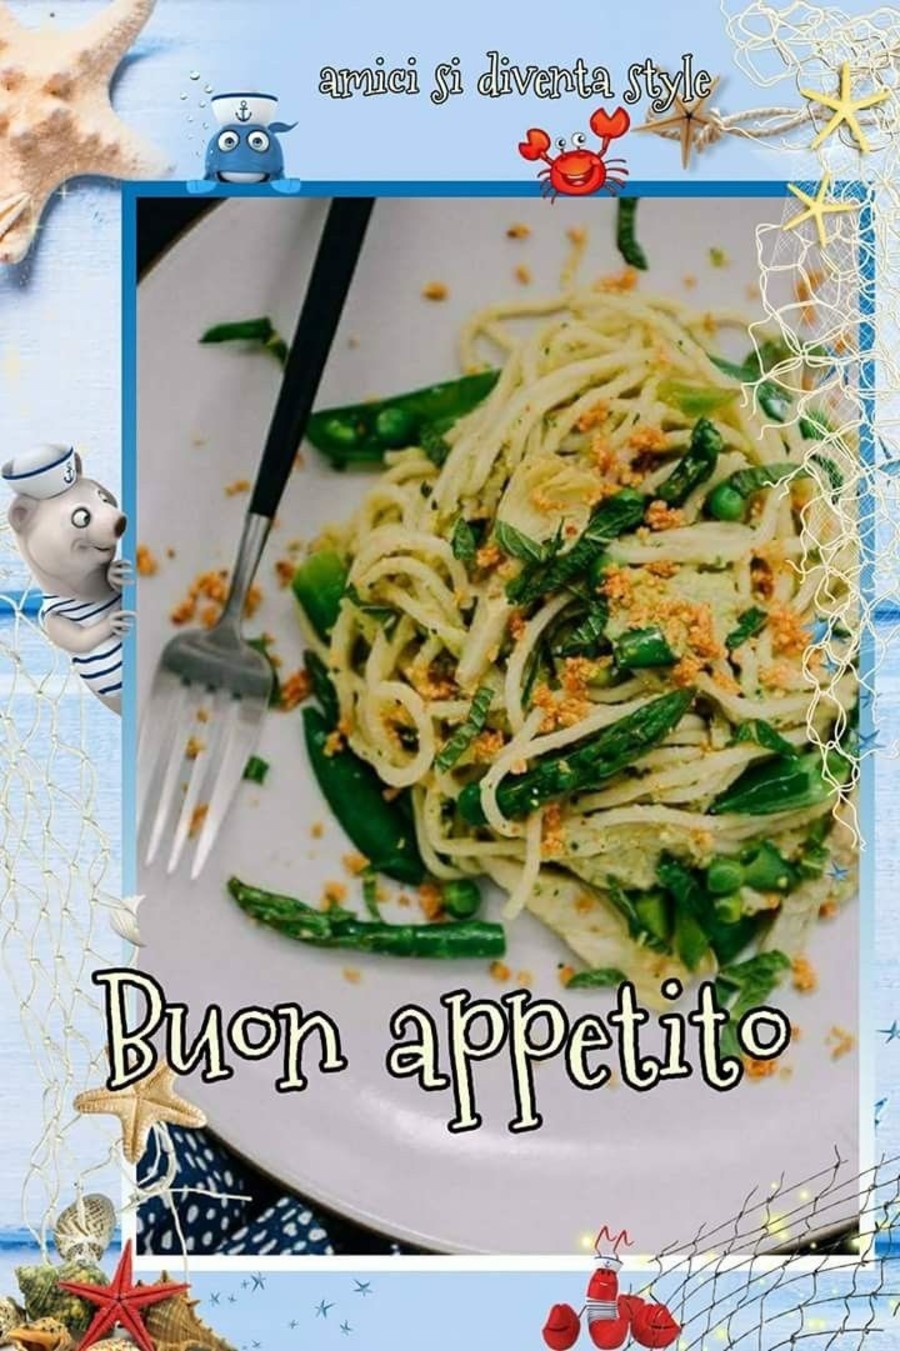 Immagini da condividere Buon Appetito all'italiana 5